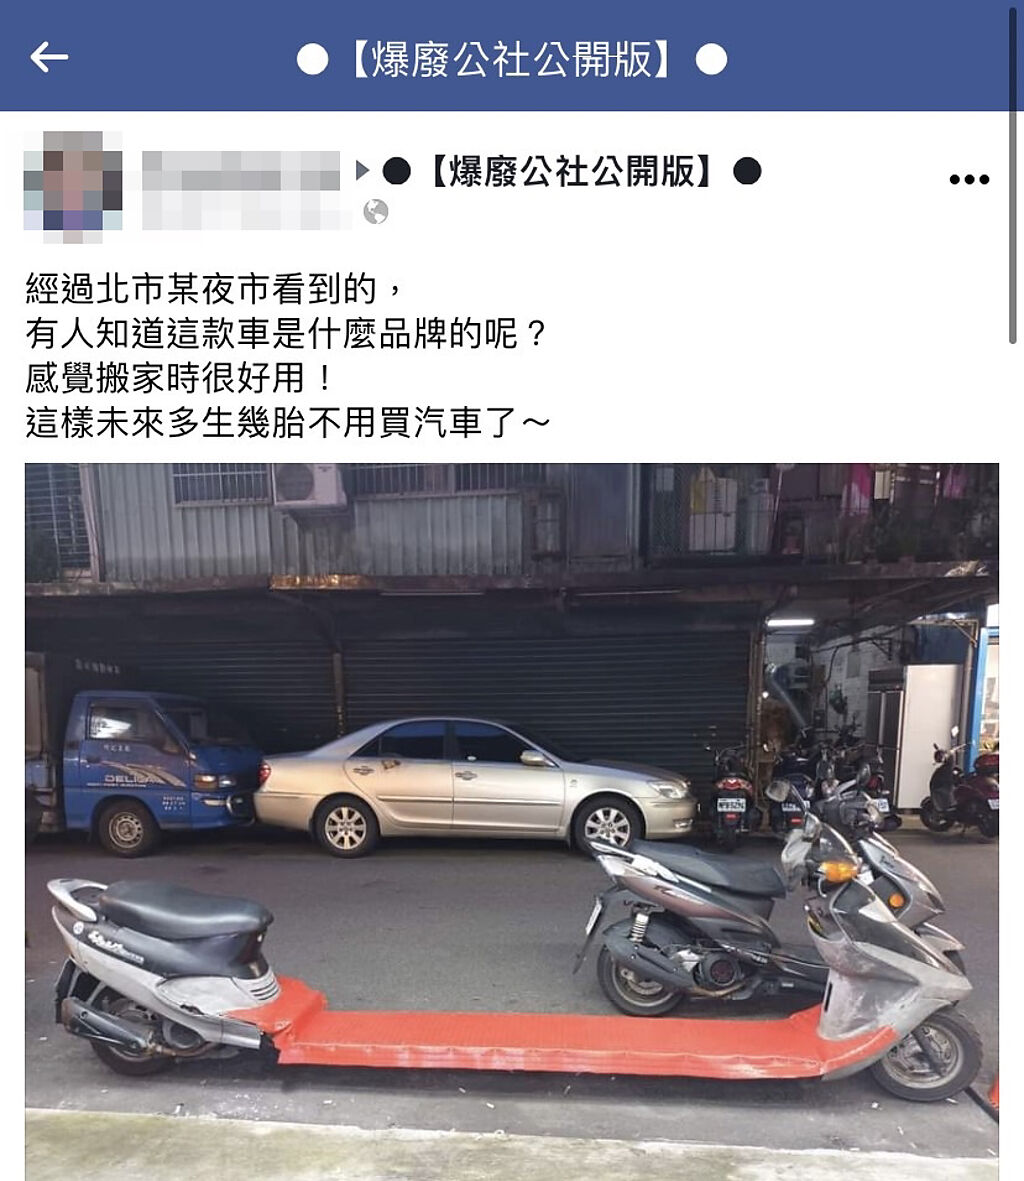 1名網友在路上發現1輛「加長型機車」，機車的腳踏板被截斷後中間加裝板子，該網友笑說搬家時應該很好用，也可以生多胎一點，不怕載不下。（翻攝自臉書「爆廢公社公開版」）